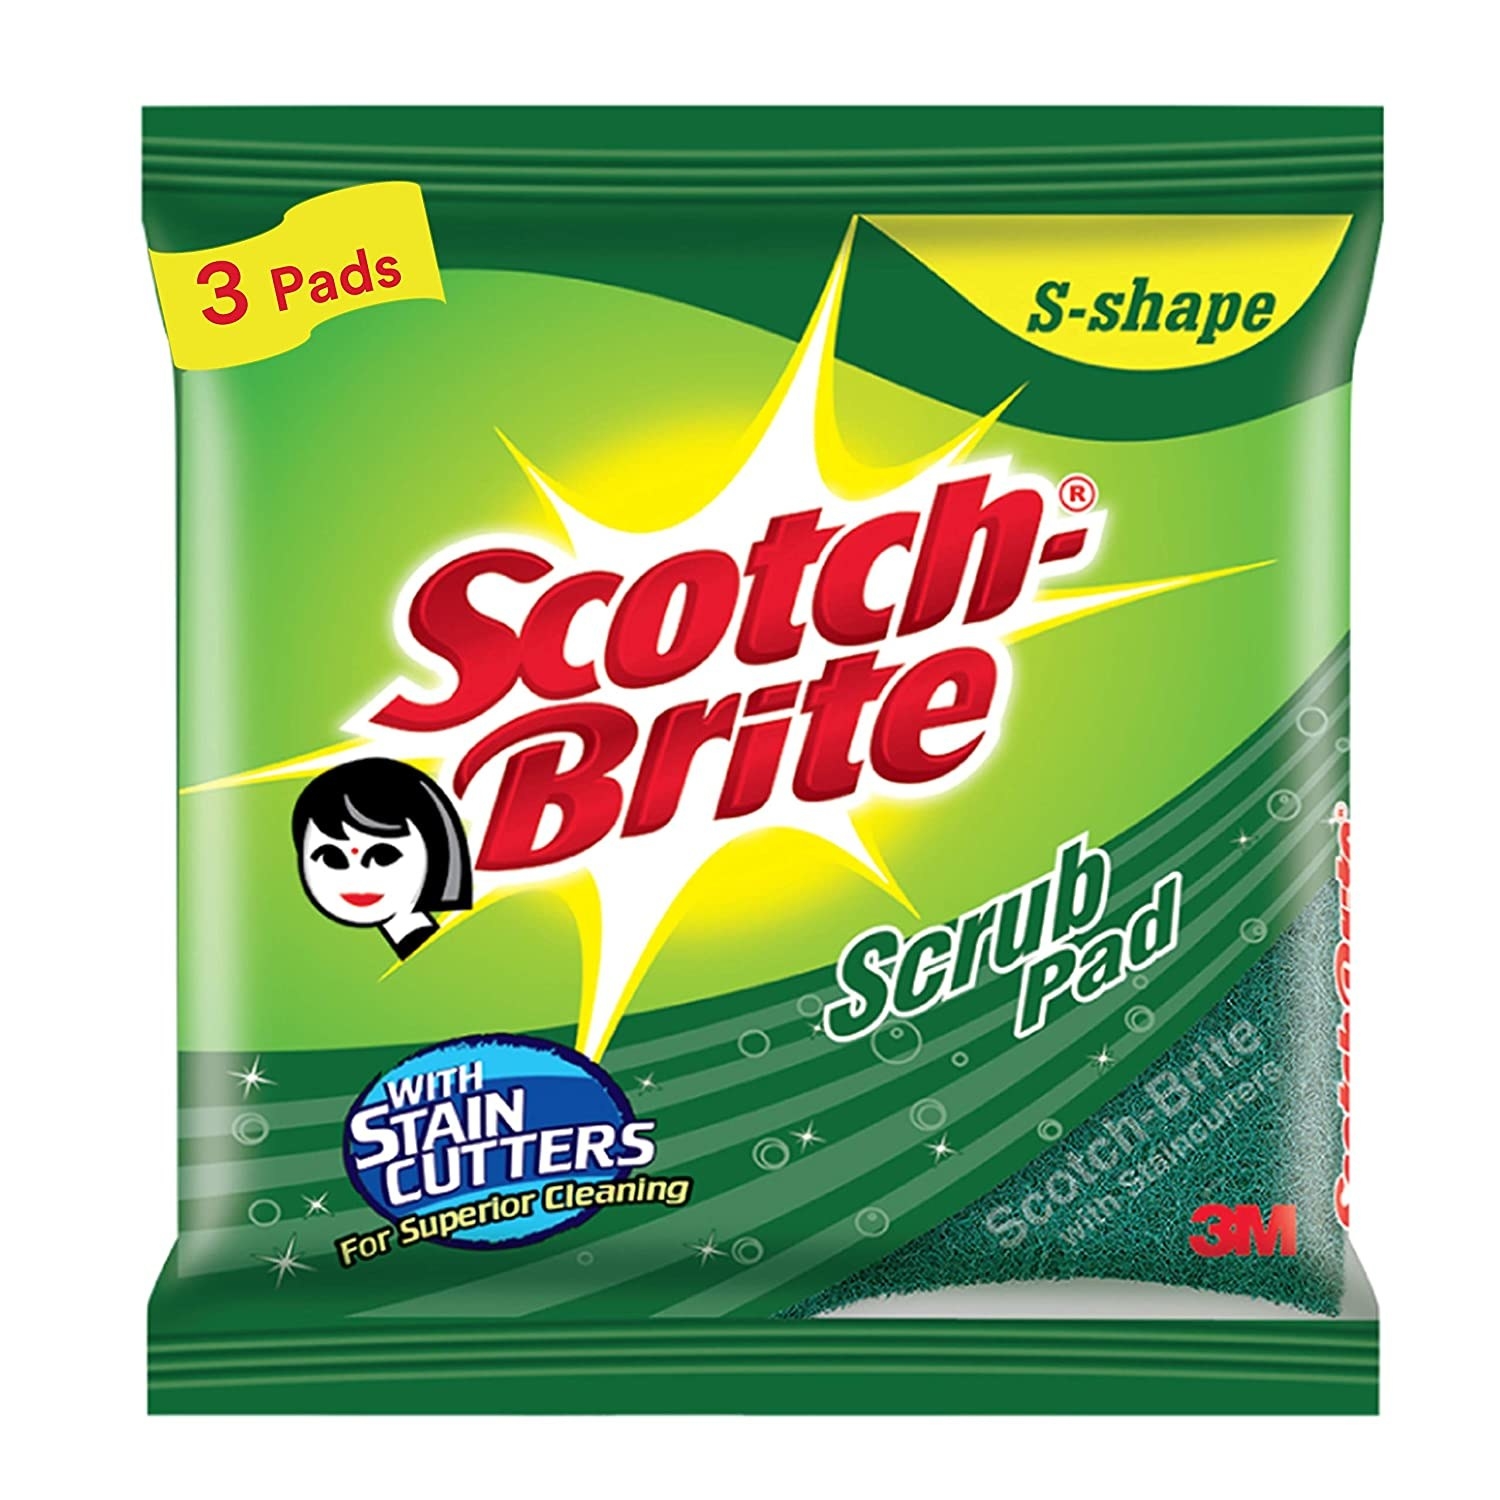 A pack of Scotch Brite scrub pads.